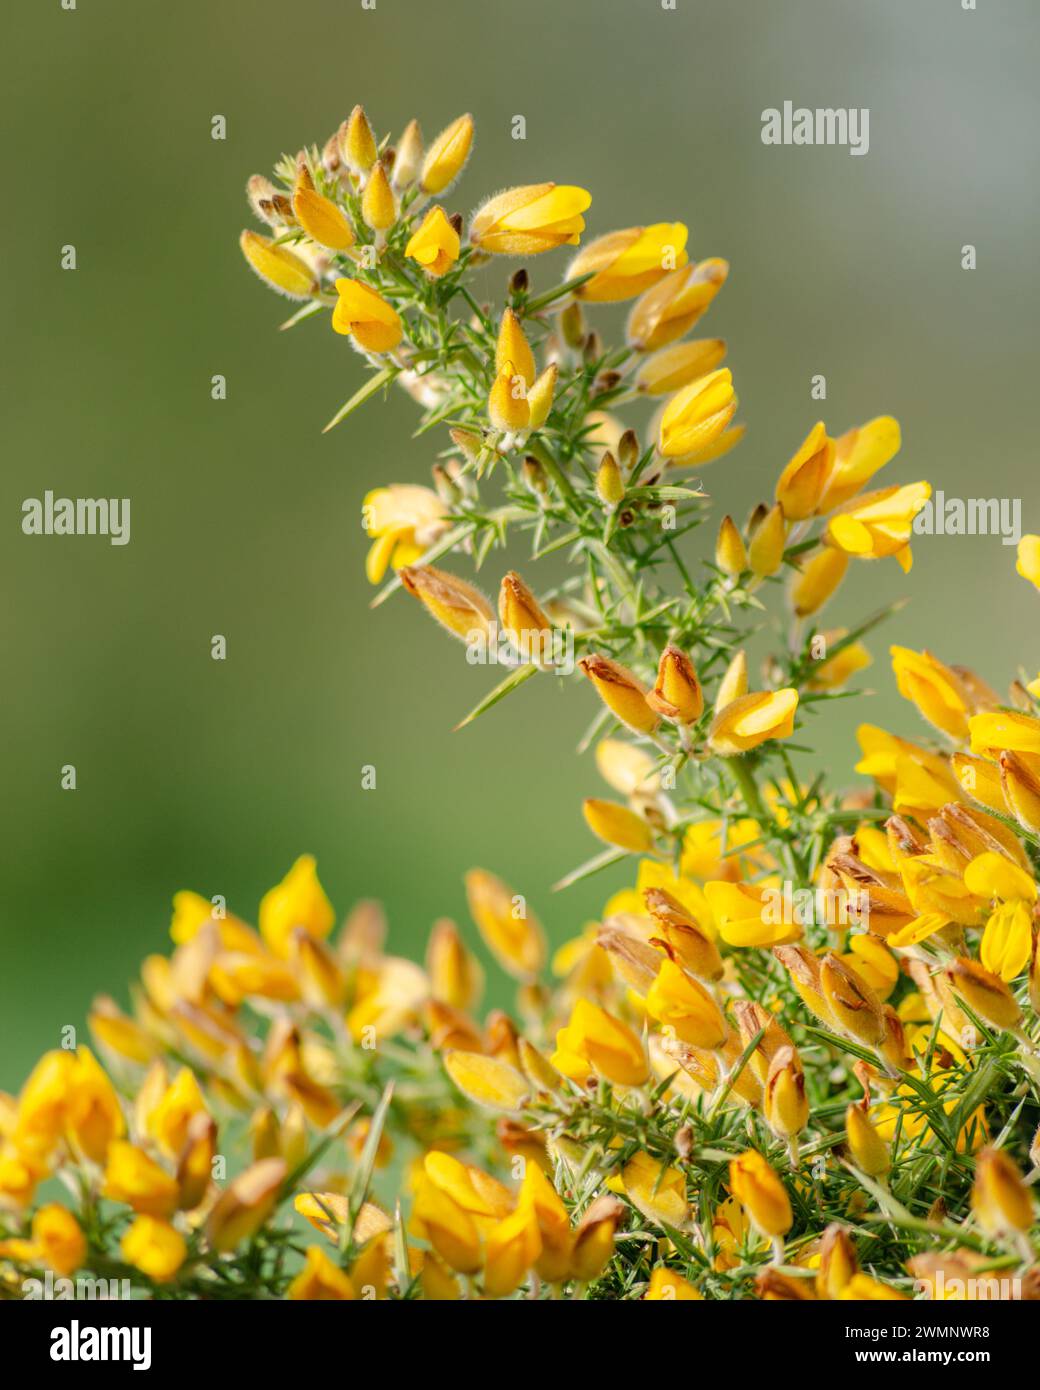 Common Gorse flowering Stock Photo